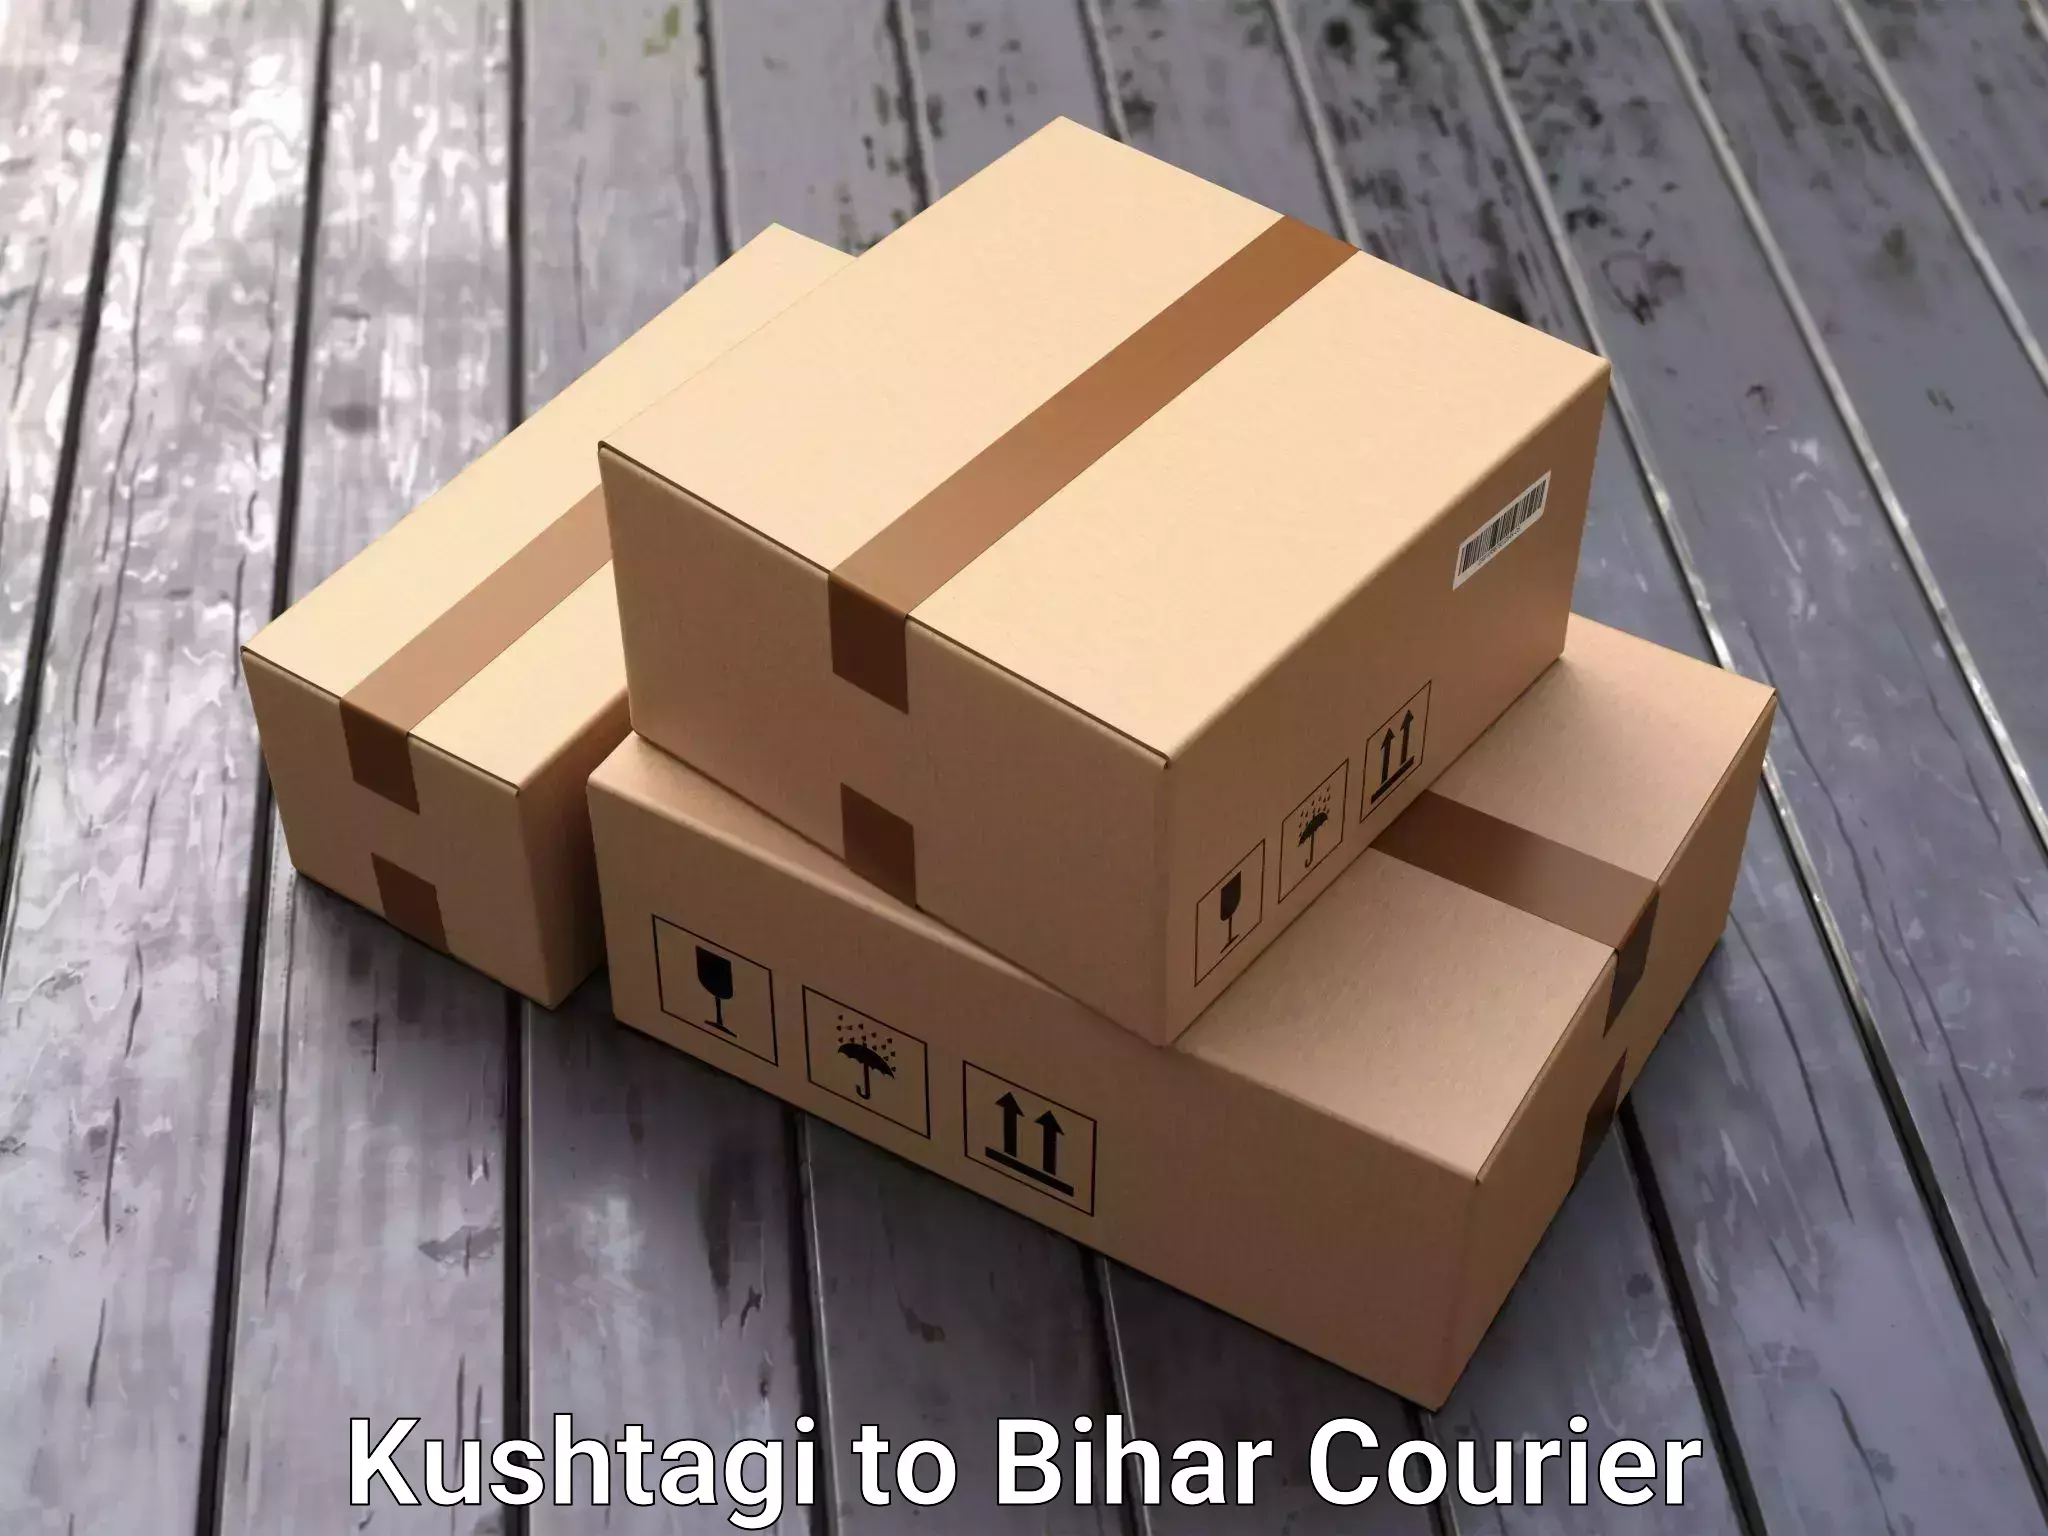 Furniture transport company Kushtagi to Sheikhpura